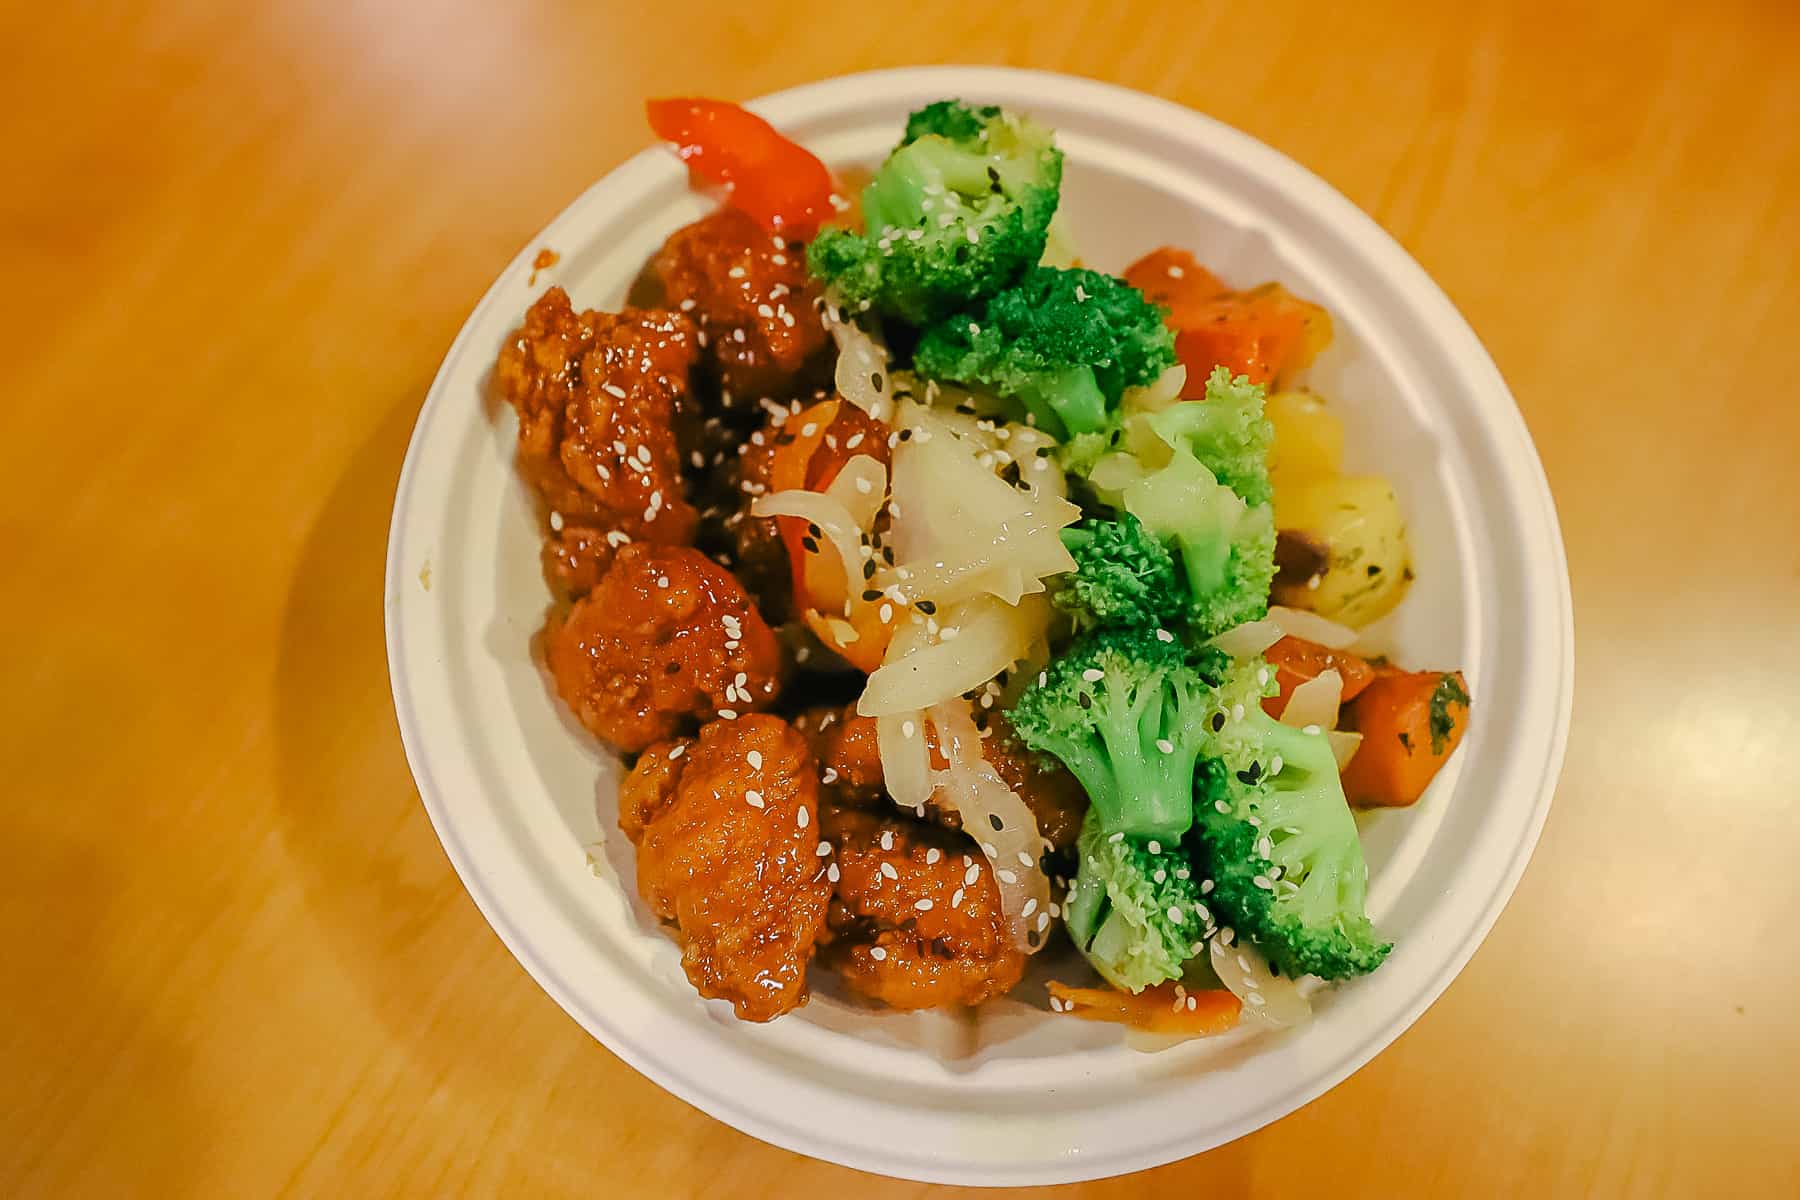 sesame chicken stir fry from Pop Century's food court 